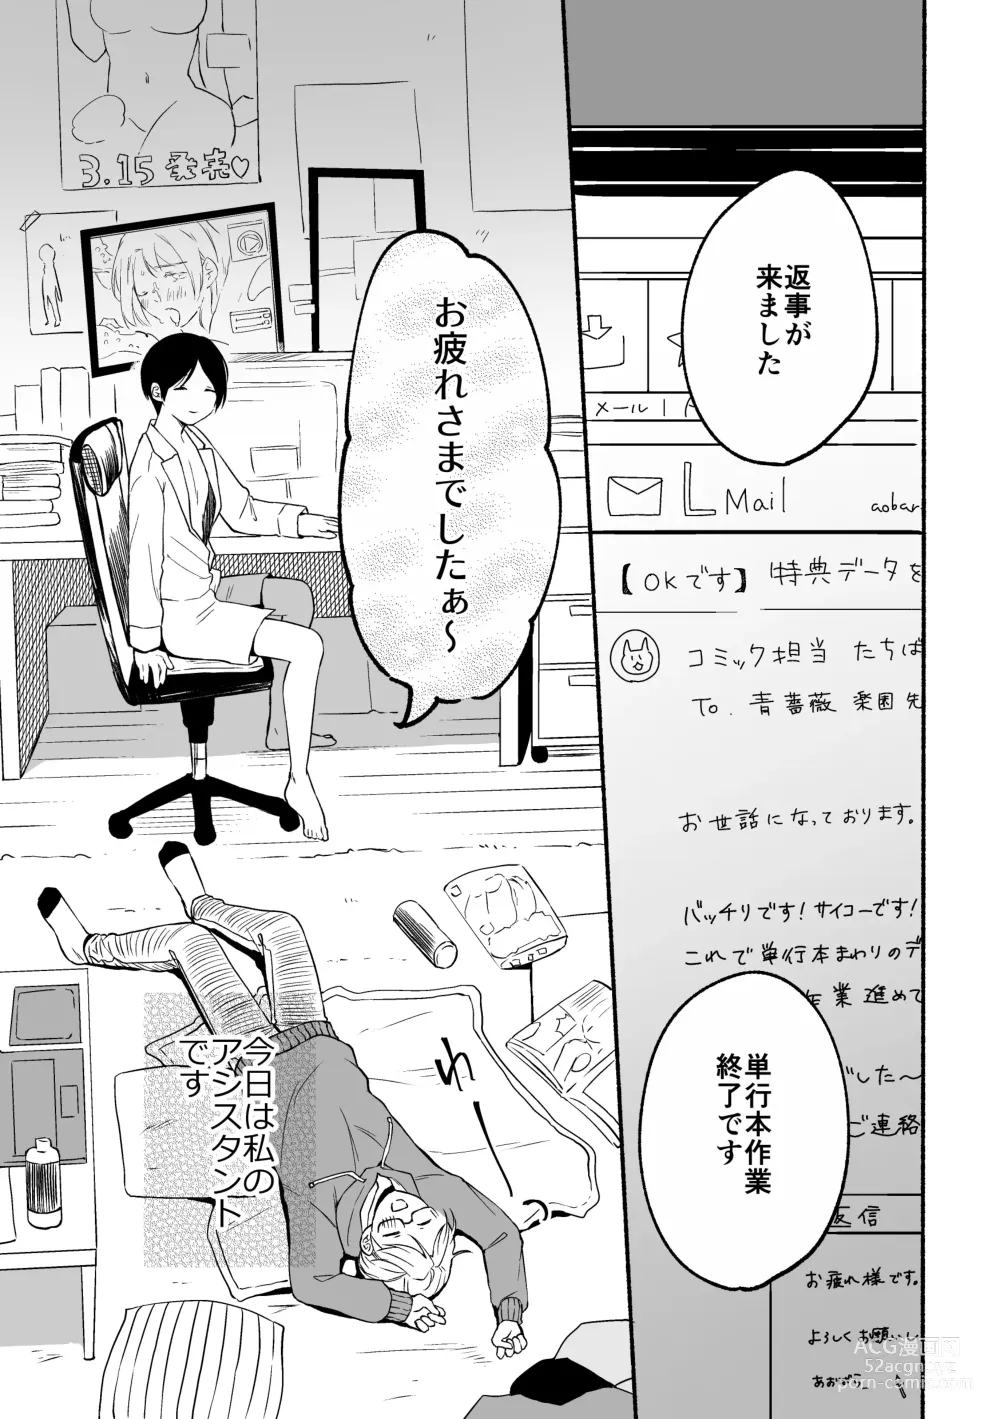 Page 3 of doujinshi Seijinkou Mangakka, Hamedori Haishin Ganbarimasu.